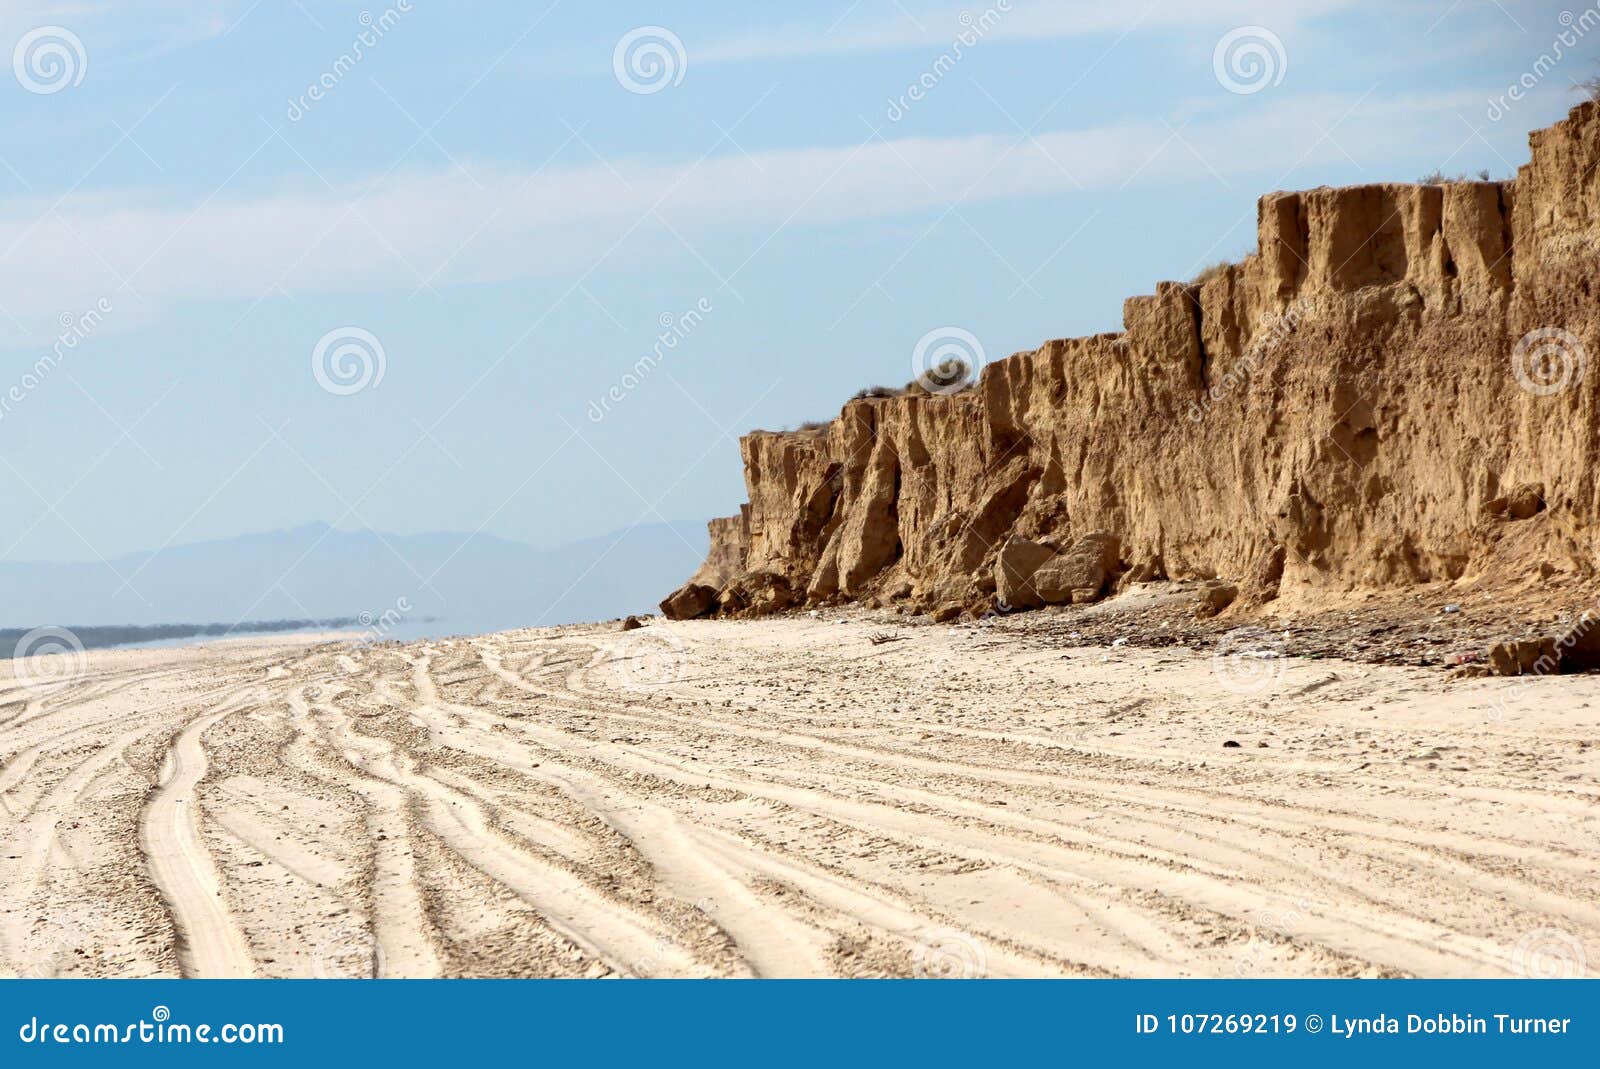 cliffs along shoreline of sea of cortez near el golfo de santa clara, sonora, mexico